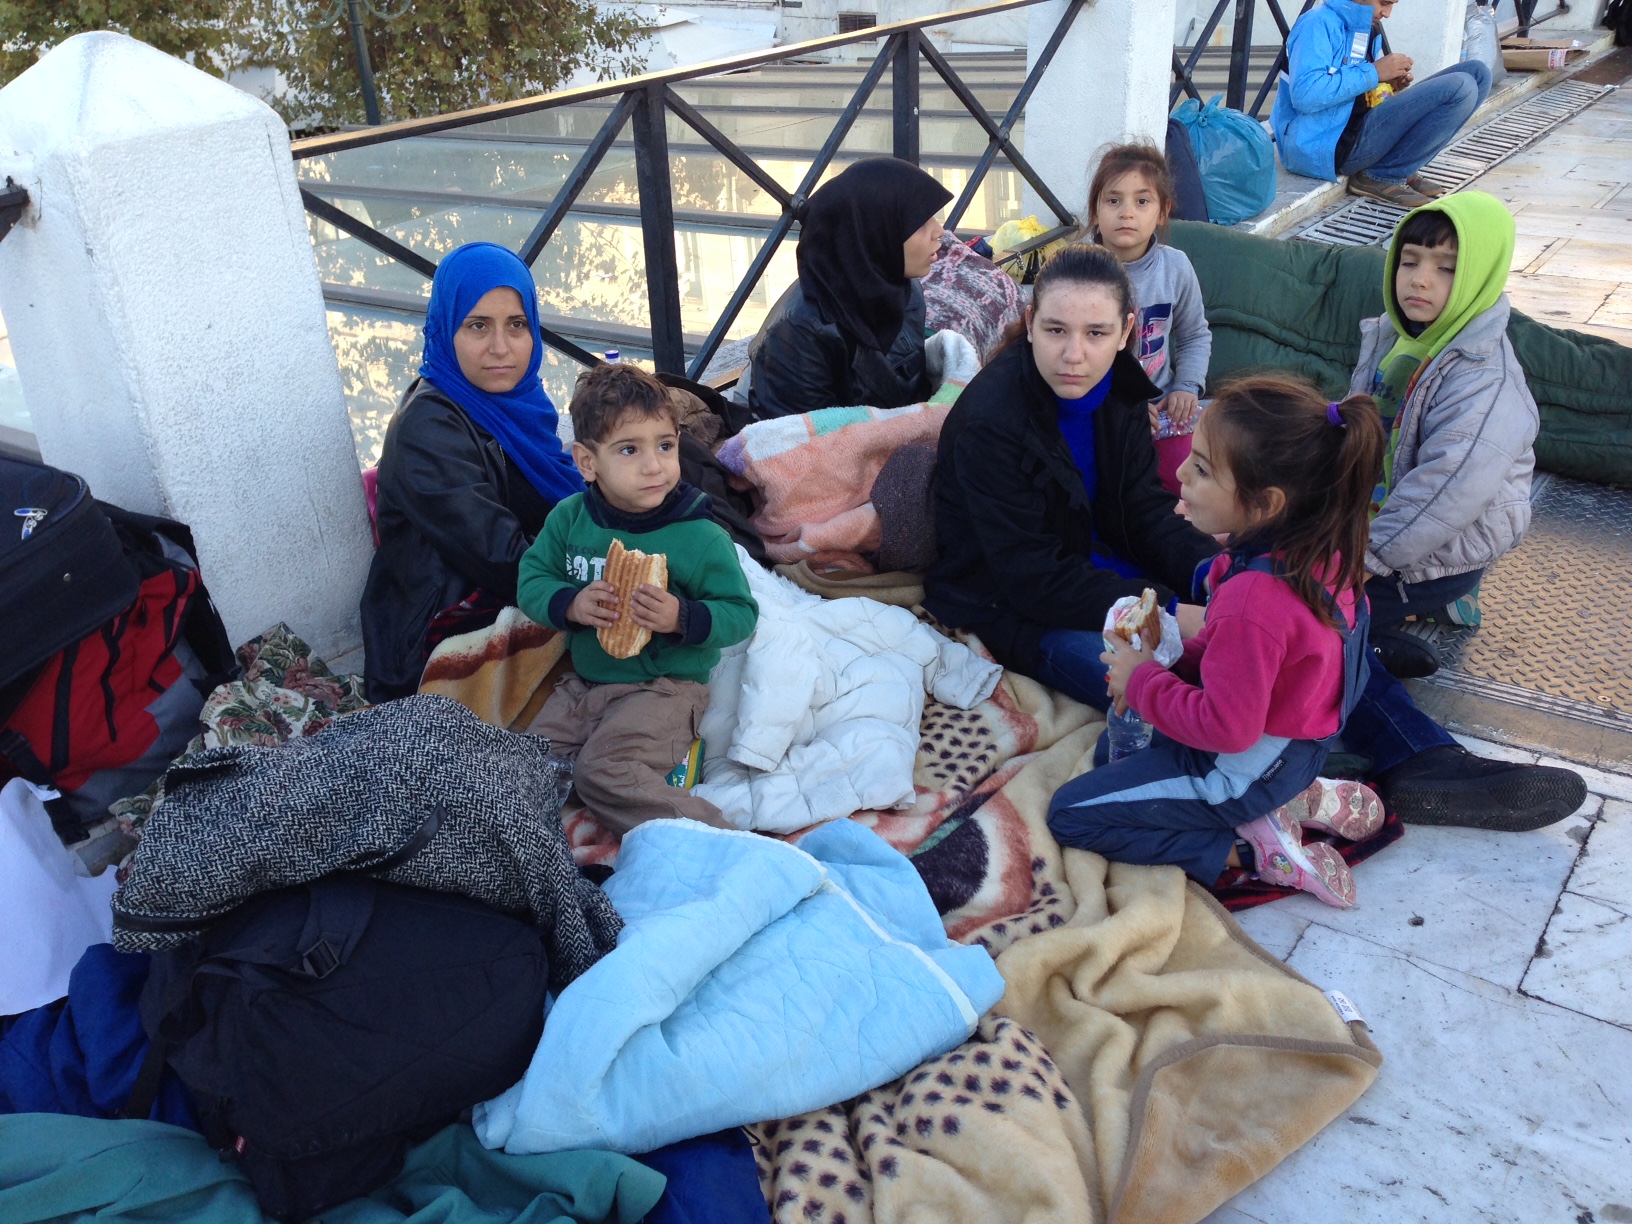 Σύροι πρόσφυγες πραγματοποιούν συγκέντρωση στην Θεσσαλονίκη